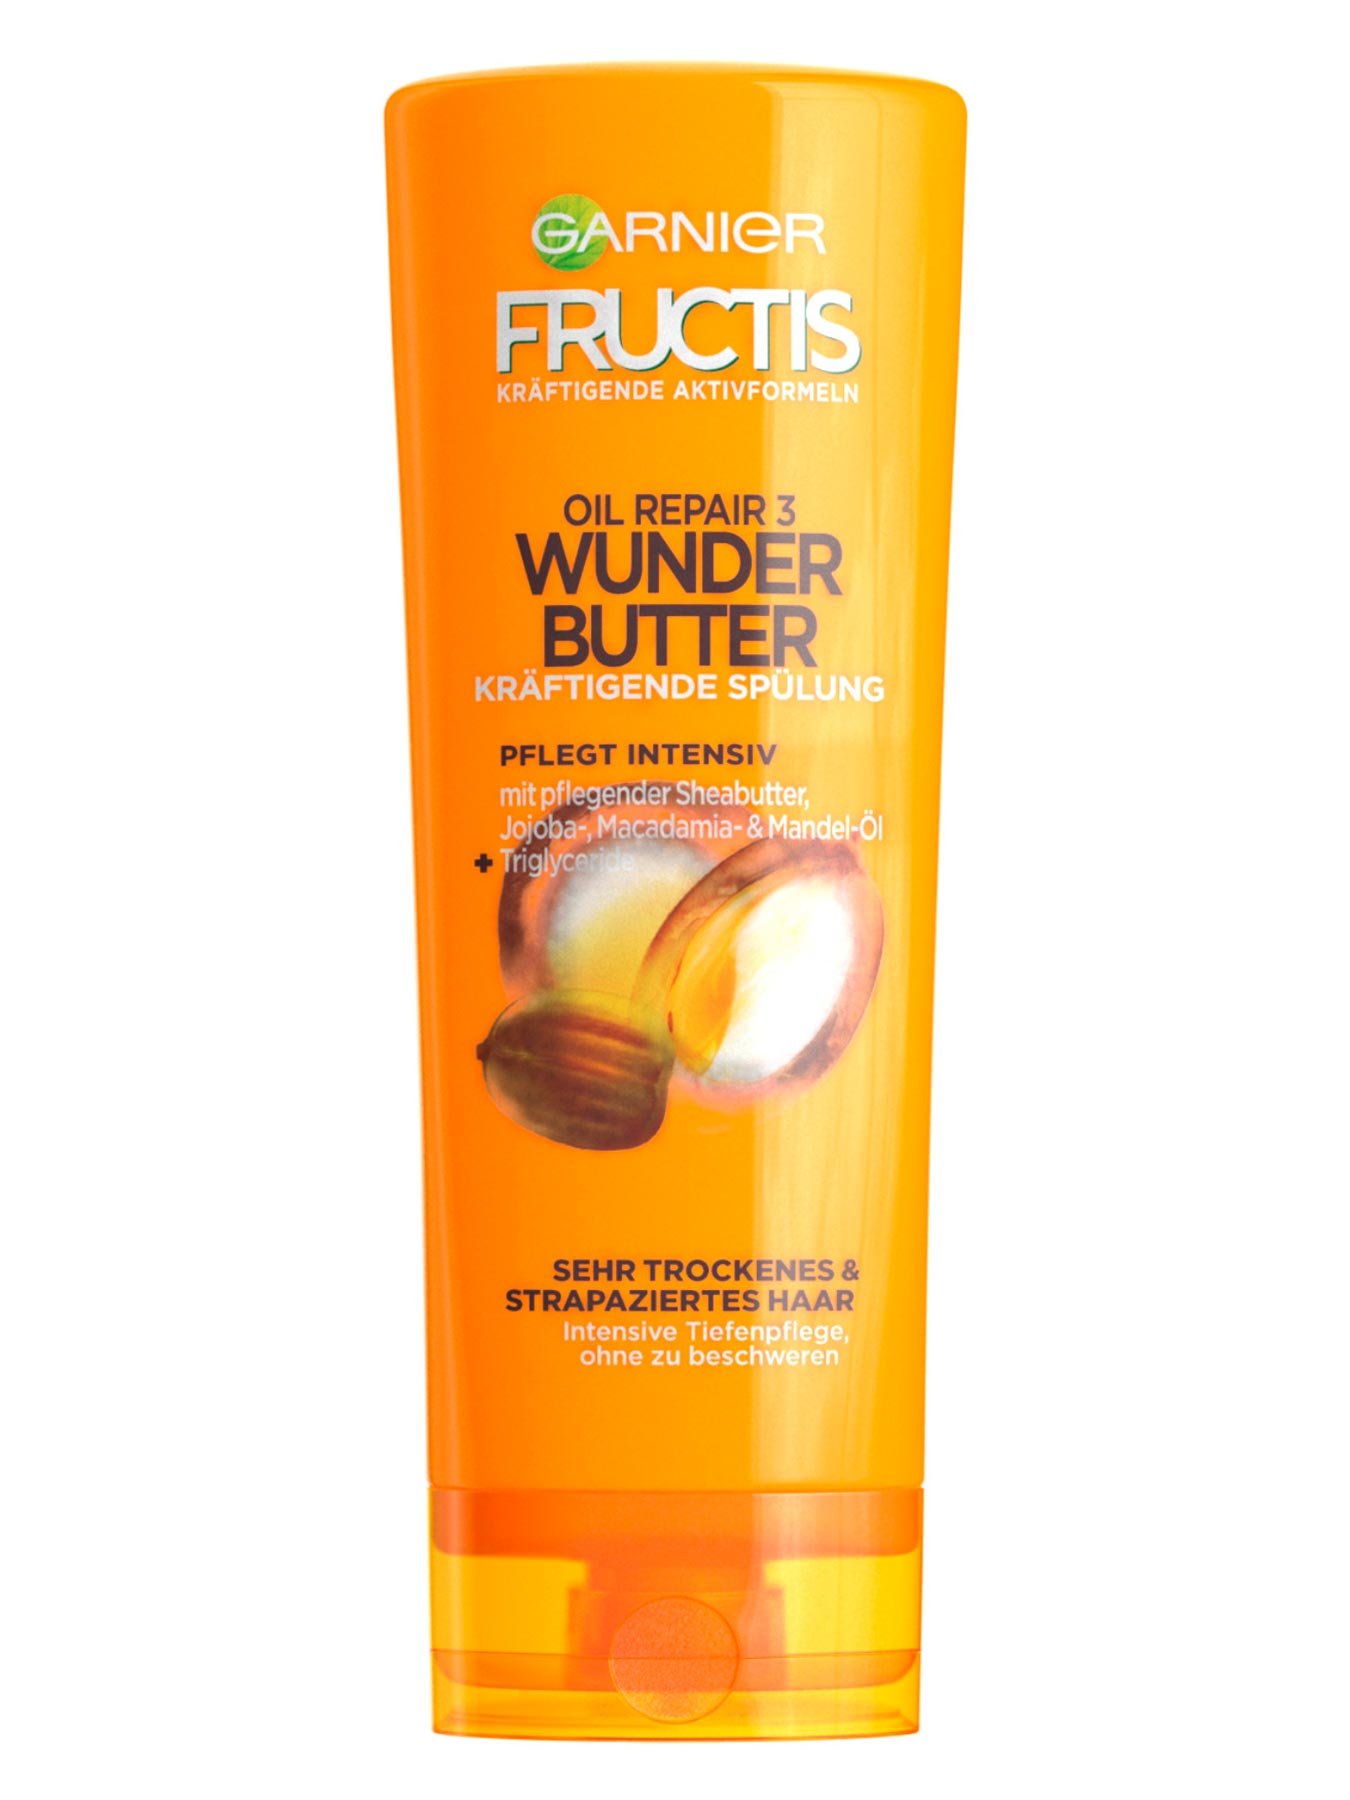 Kraeftigende-Spuelung-Fructis-Oil-Repair-3-Wunder-Butter-250ml-Vorderseite-Garnier-Deutschland-gross